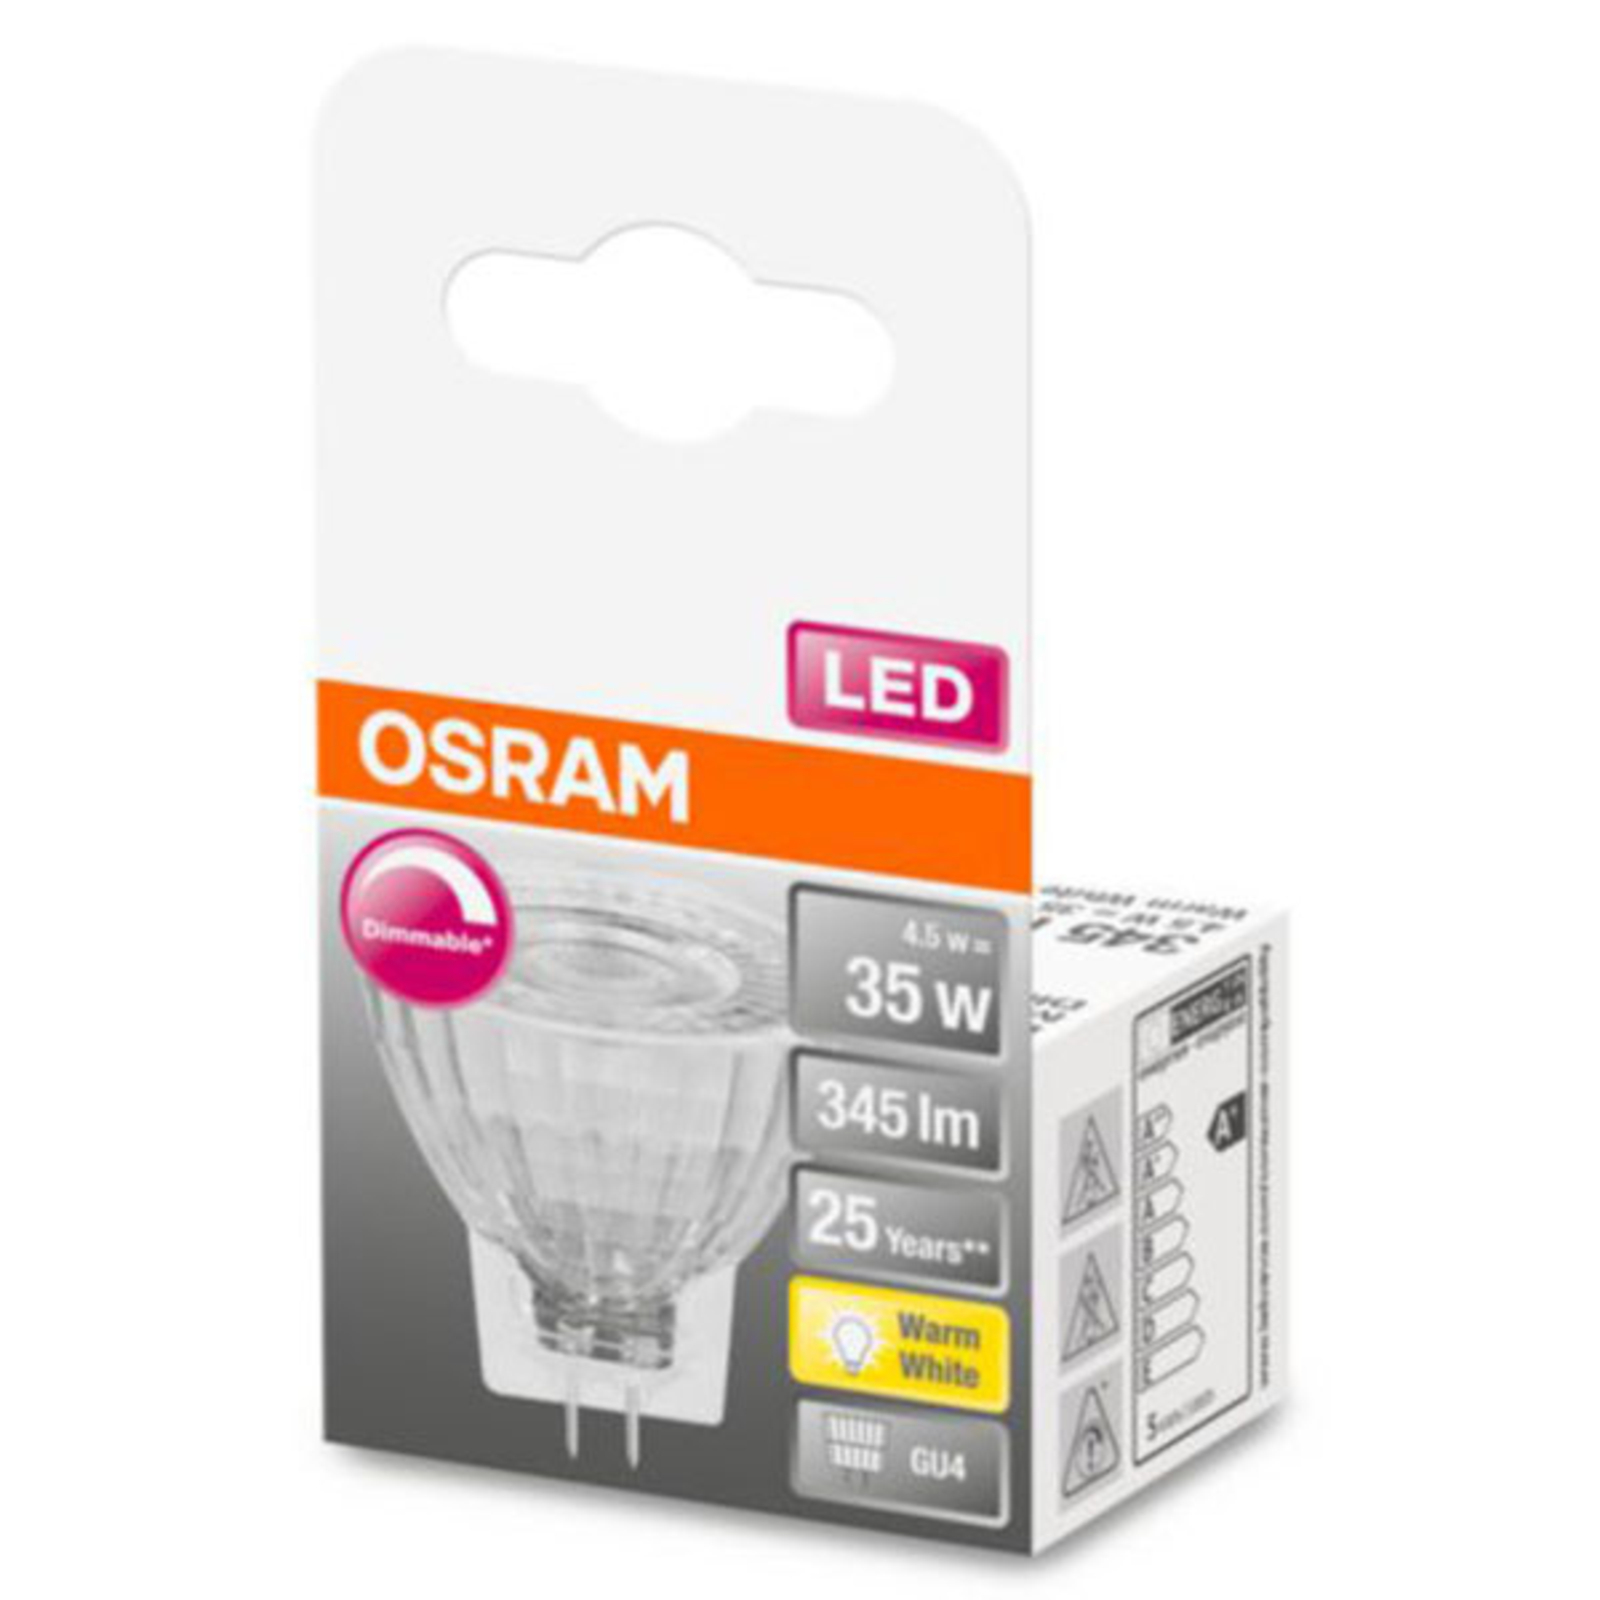 Krimpen Terugbetaling Dag OSRAM LED reflector GU4 MR11 4,5W 927 36° dimbaar | Lampen24.be